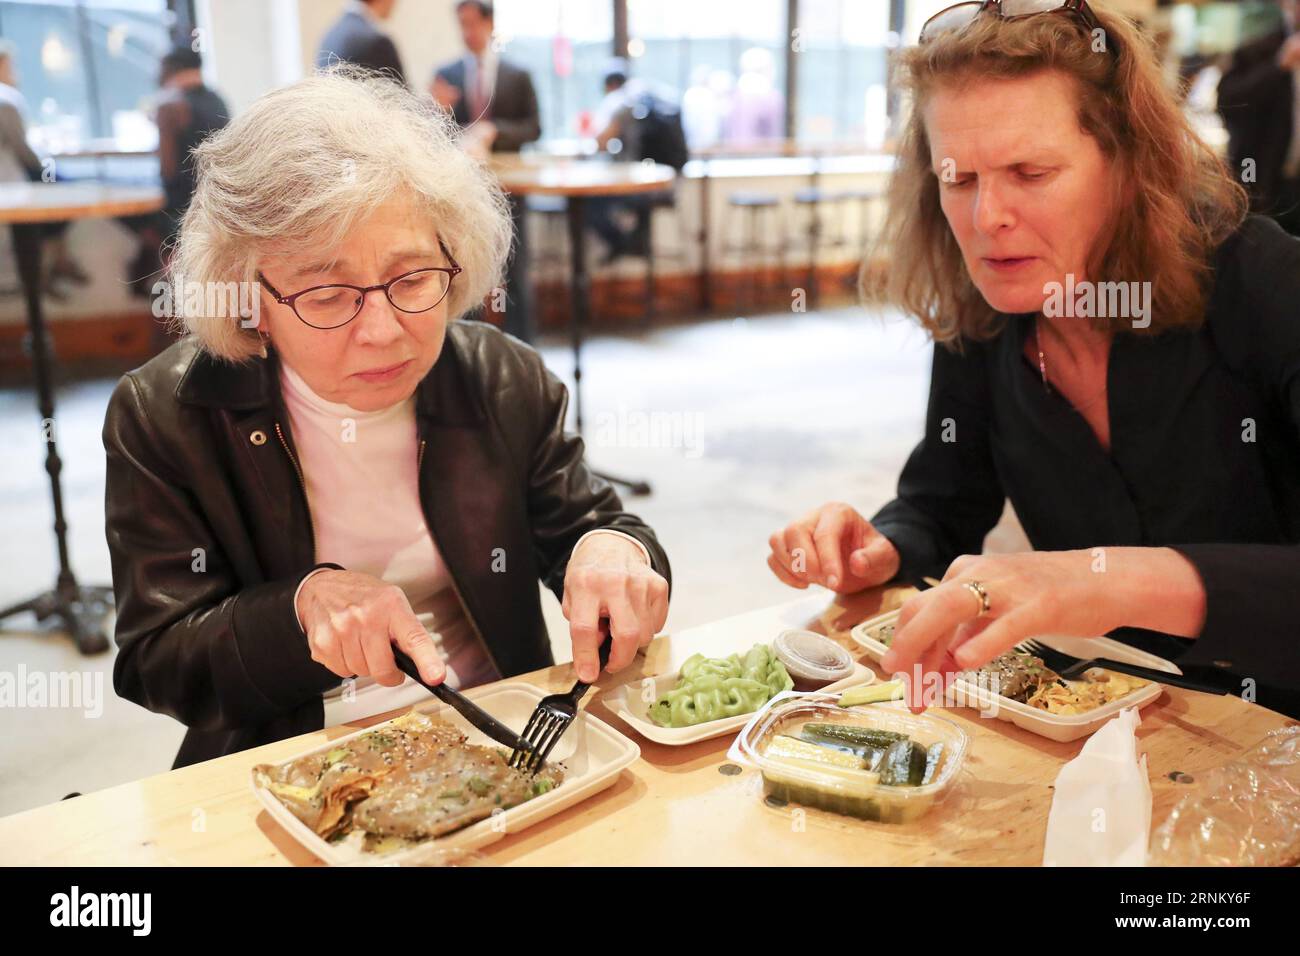 (170425) -- NEW YORK, 25 aprile 2017 -- i clienti mangiano Jianbing di Mr. Bing in UrbanSpace food Court a New York, Stati Uniti, 17 aprile 2017. UrbanSpace nel centro di New York è un luogo dove i collari bianchi vengono a pranzo durante i loro giorni lavorativi. Negli ultimi mesi, i clienti si sono sempre allineati prima di un chiosco sotto uno striscione con caratteri cinesi. Quello che questo chiosco vende è un autentico cibo cinese nel nord della Cina -- Jianbing, o crepe cinese. Il chiosco è marchiato Mr. Bing ed è di proprietà di Brian Goldberg, che è nato e cresciuto a New York. Goldberg è molto coinvolto con il cinese C. Foto Stock